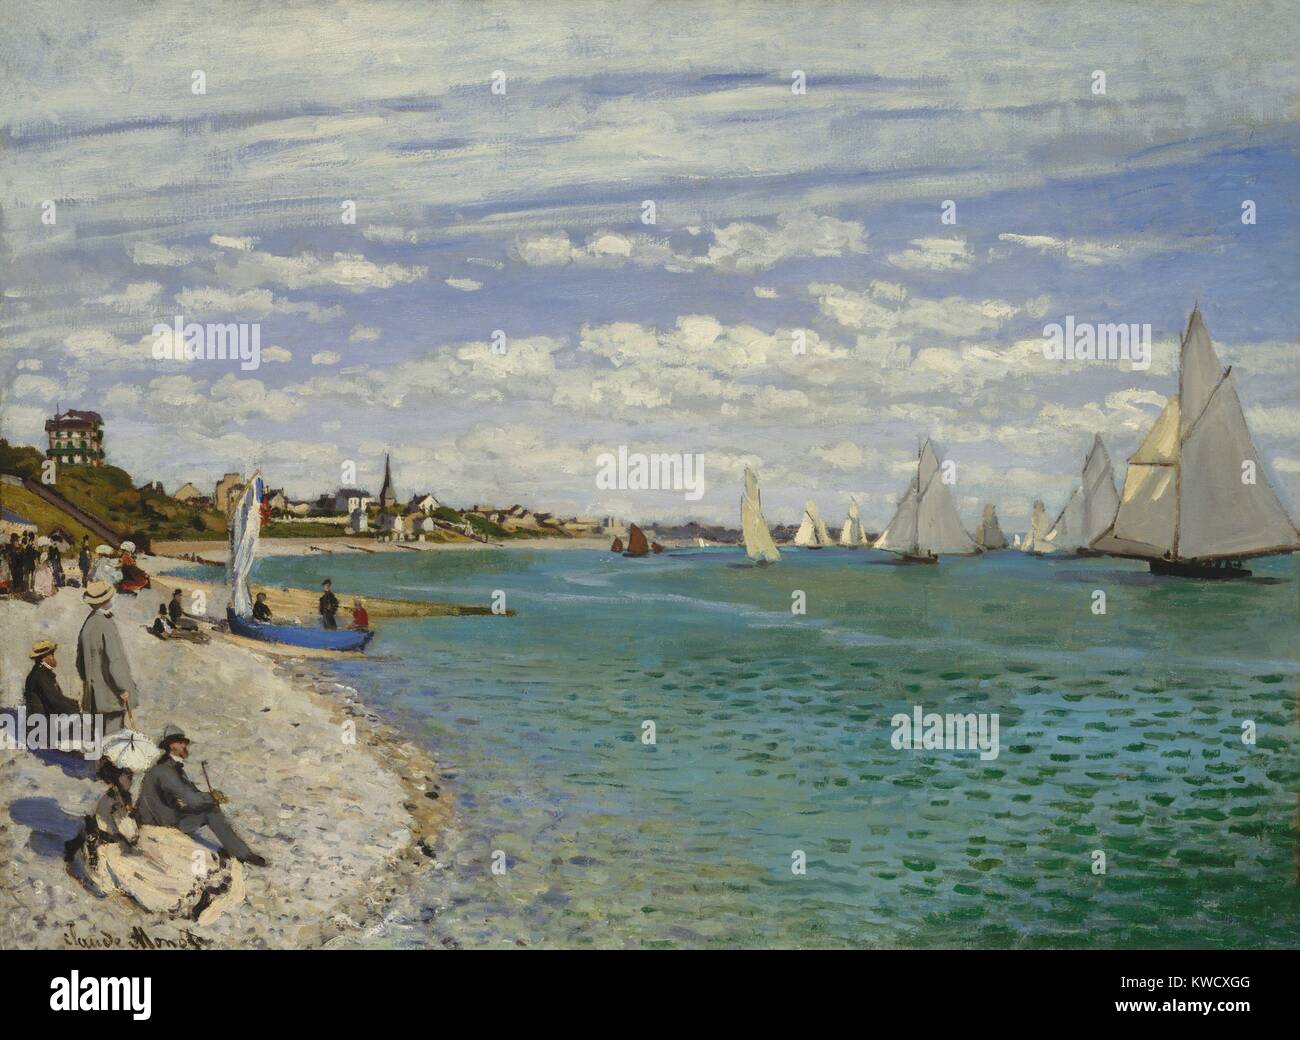 Régates à Sainte-Adresse, par Claude Monet, 1867, la peinture impressionniste français, huile sur toile. Il dépeint une régate de voile au Havre avec les chiffres sur la plage. L'homme debout dans un costume gris et chapeau de paille est le père de Monet (BSLOC 2017 3 19) Banque D'Images